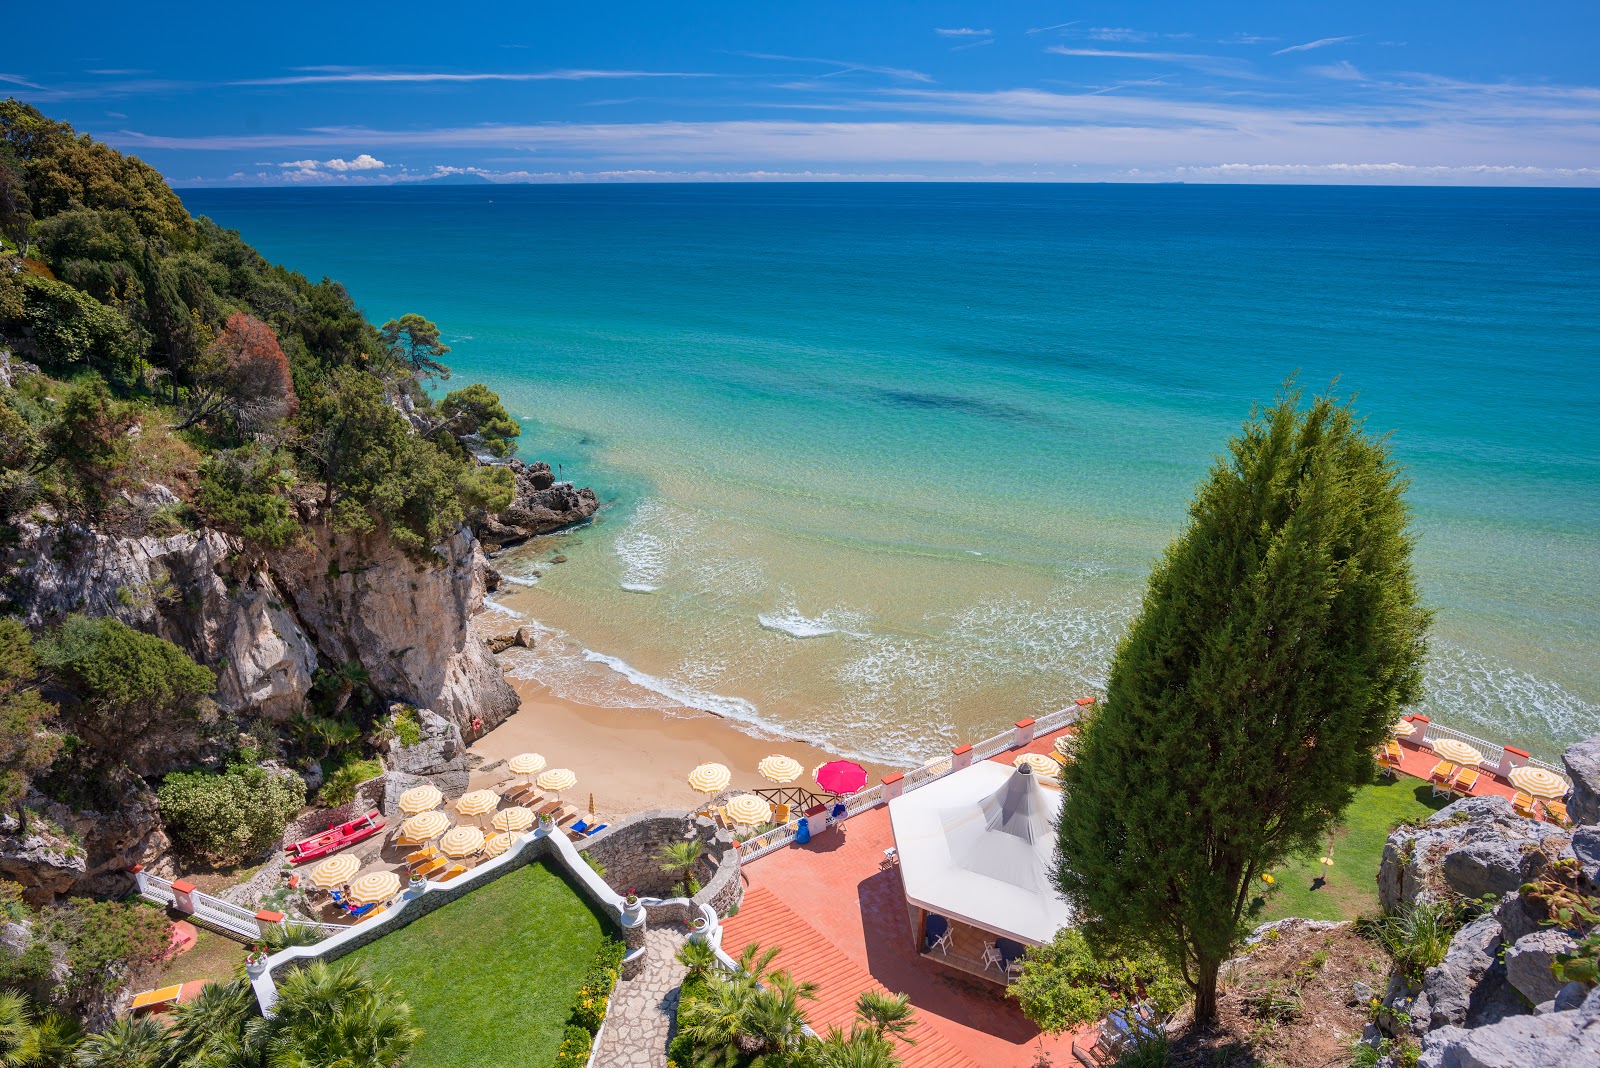 Photo of Albergo hotel beach with tiny bay